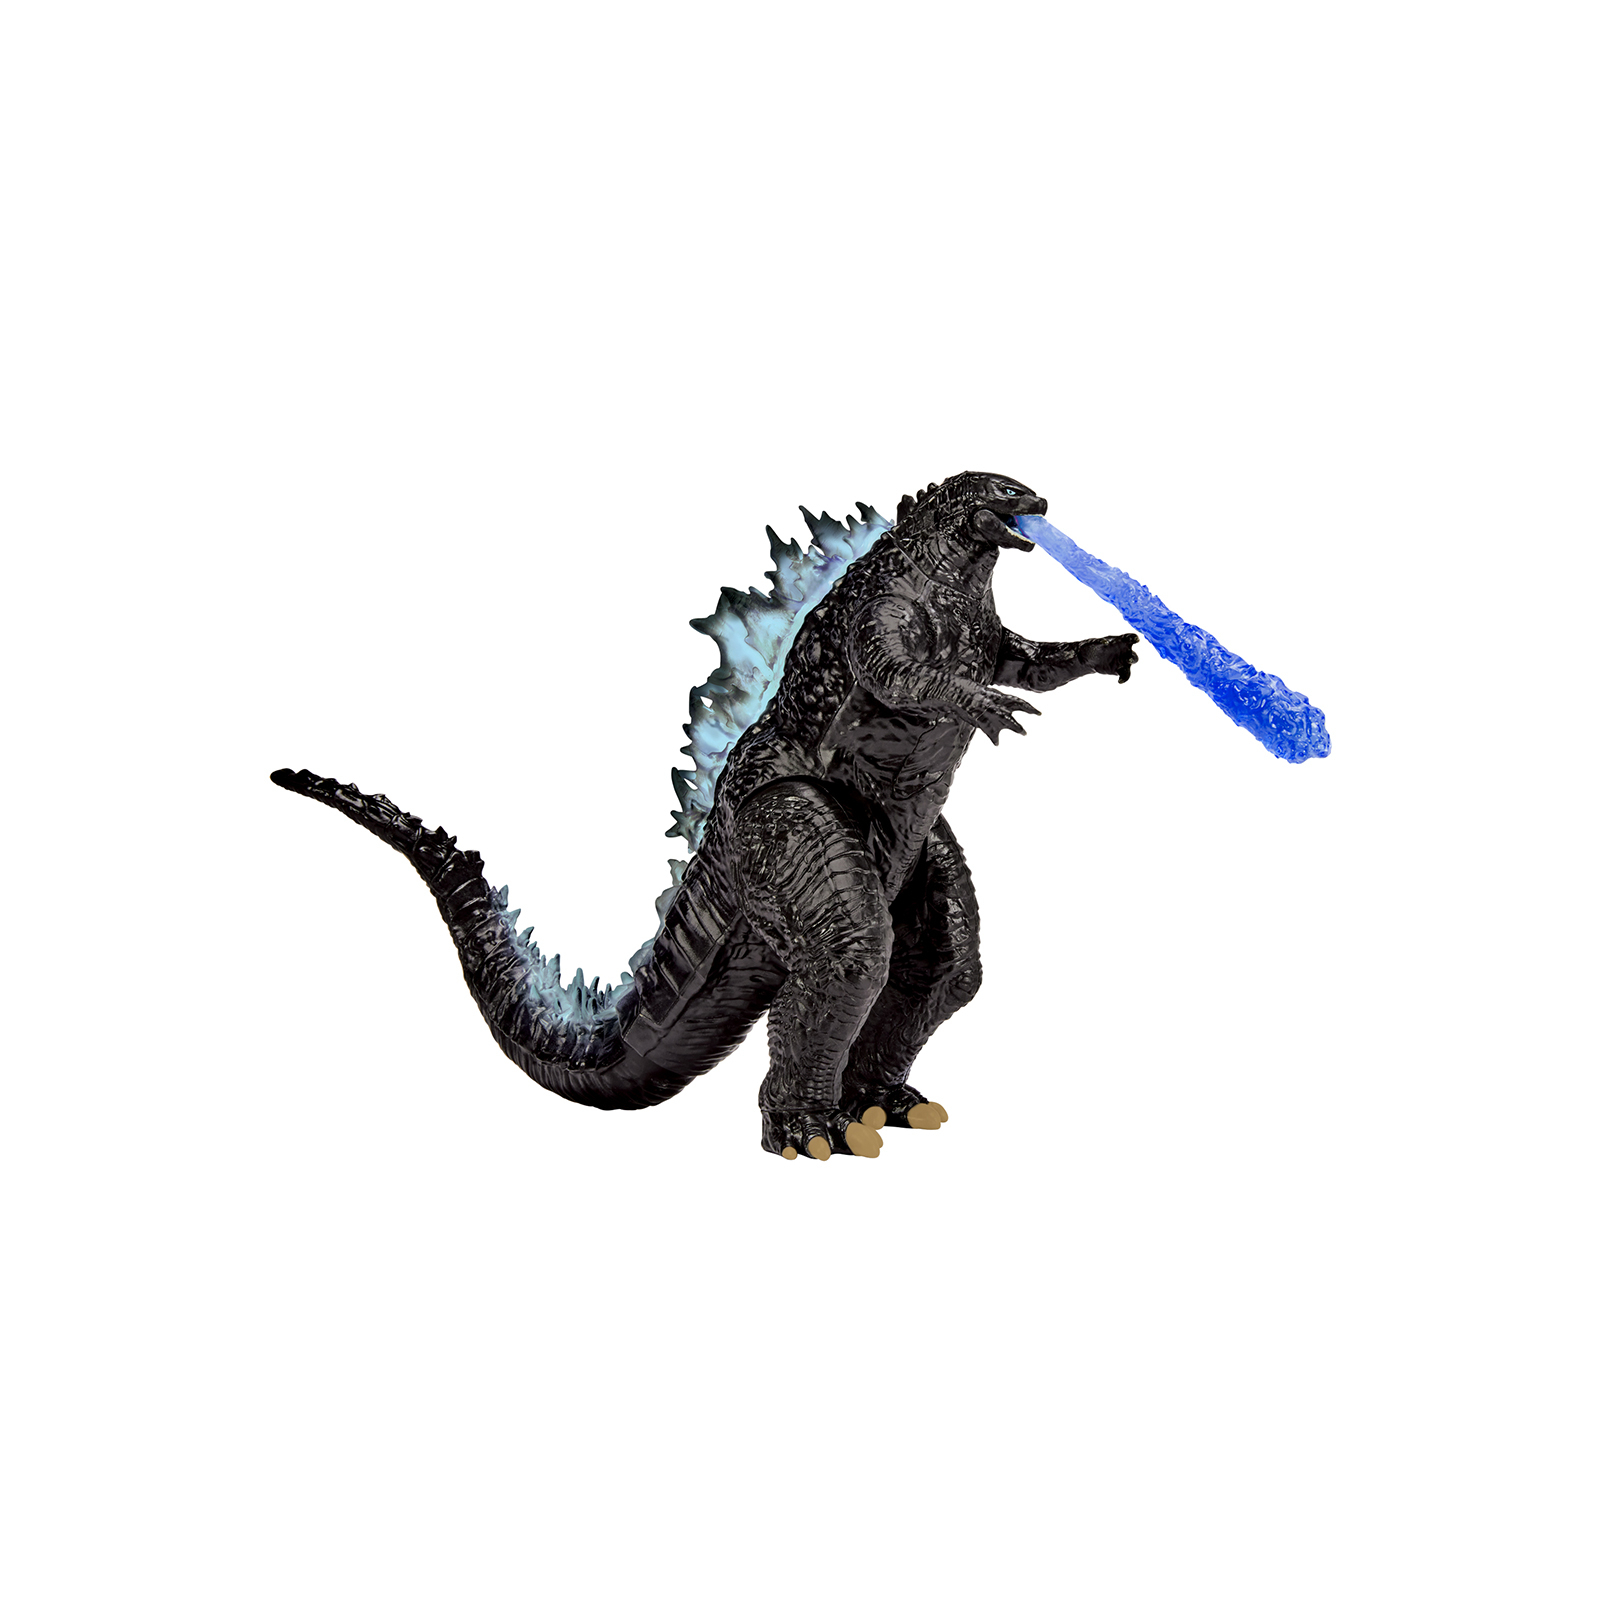 Фігурка Godzilla vs. Kong Ґодзілла до еволюції з променем (35201)